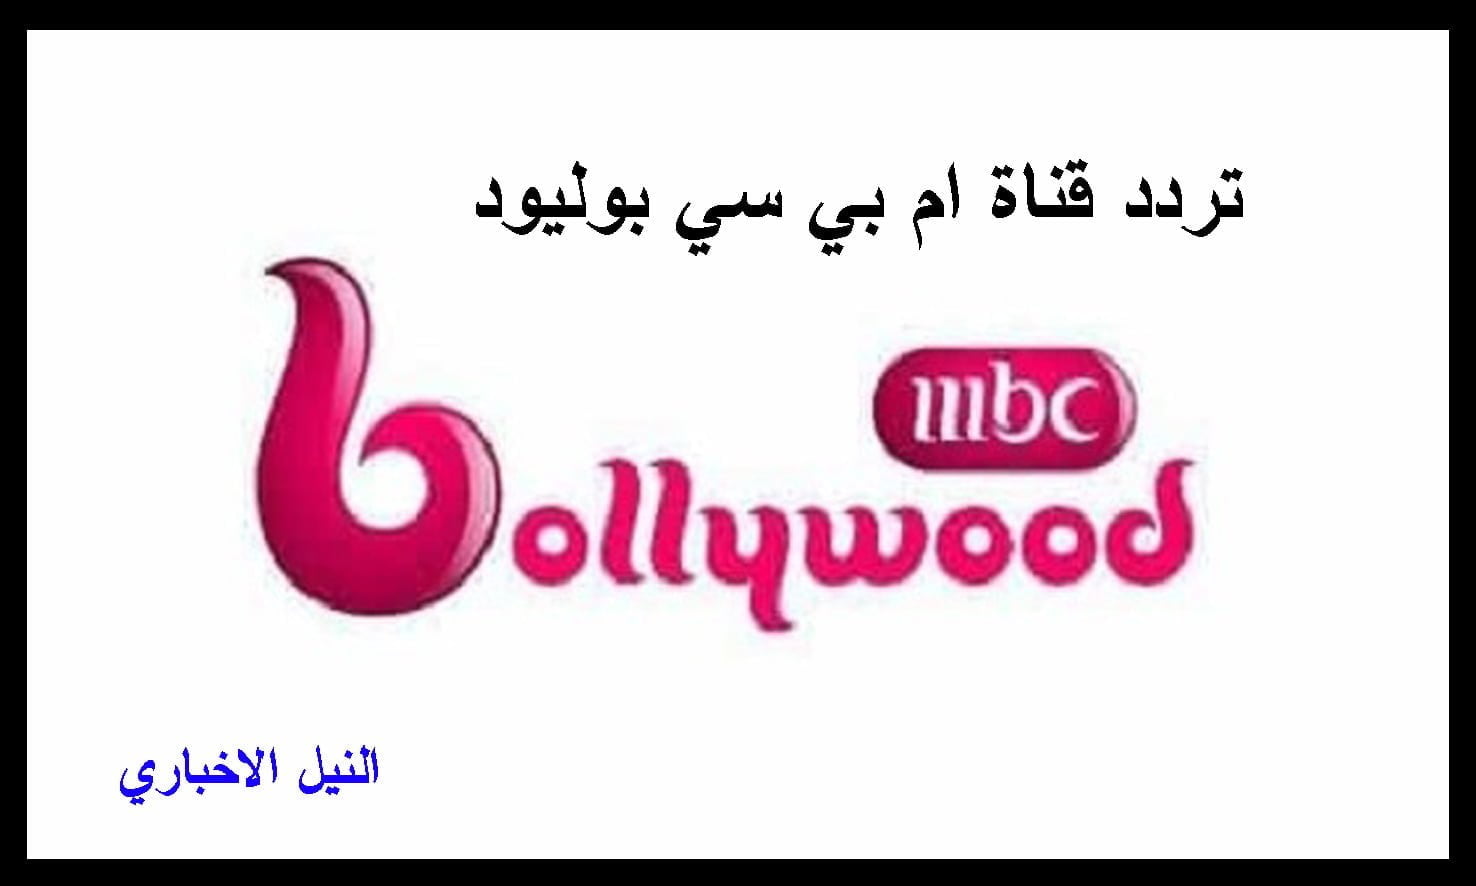 تردد قناة إم بي سي بوليود MBC Bollywood لمتابعة أحدث المسلسلات الهندية